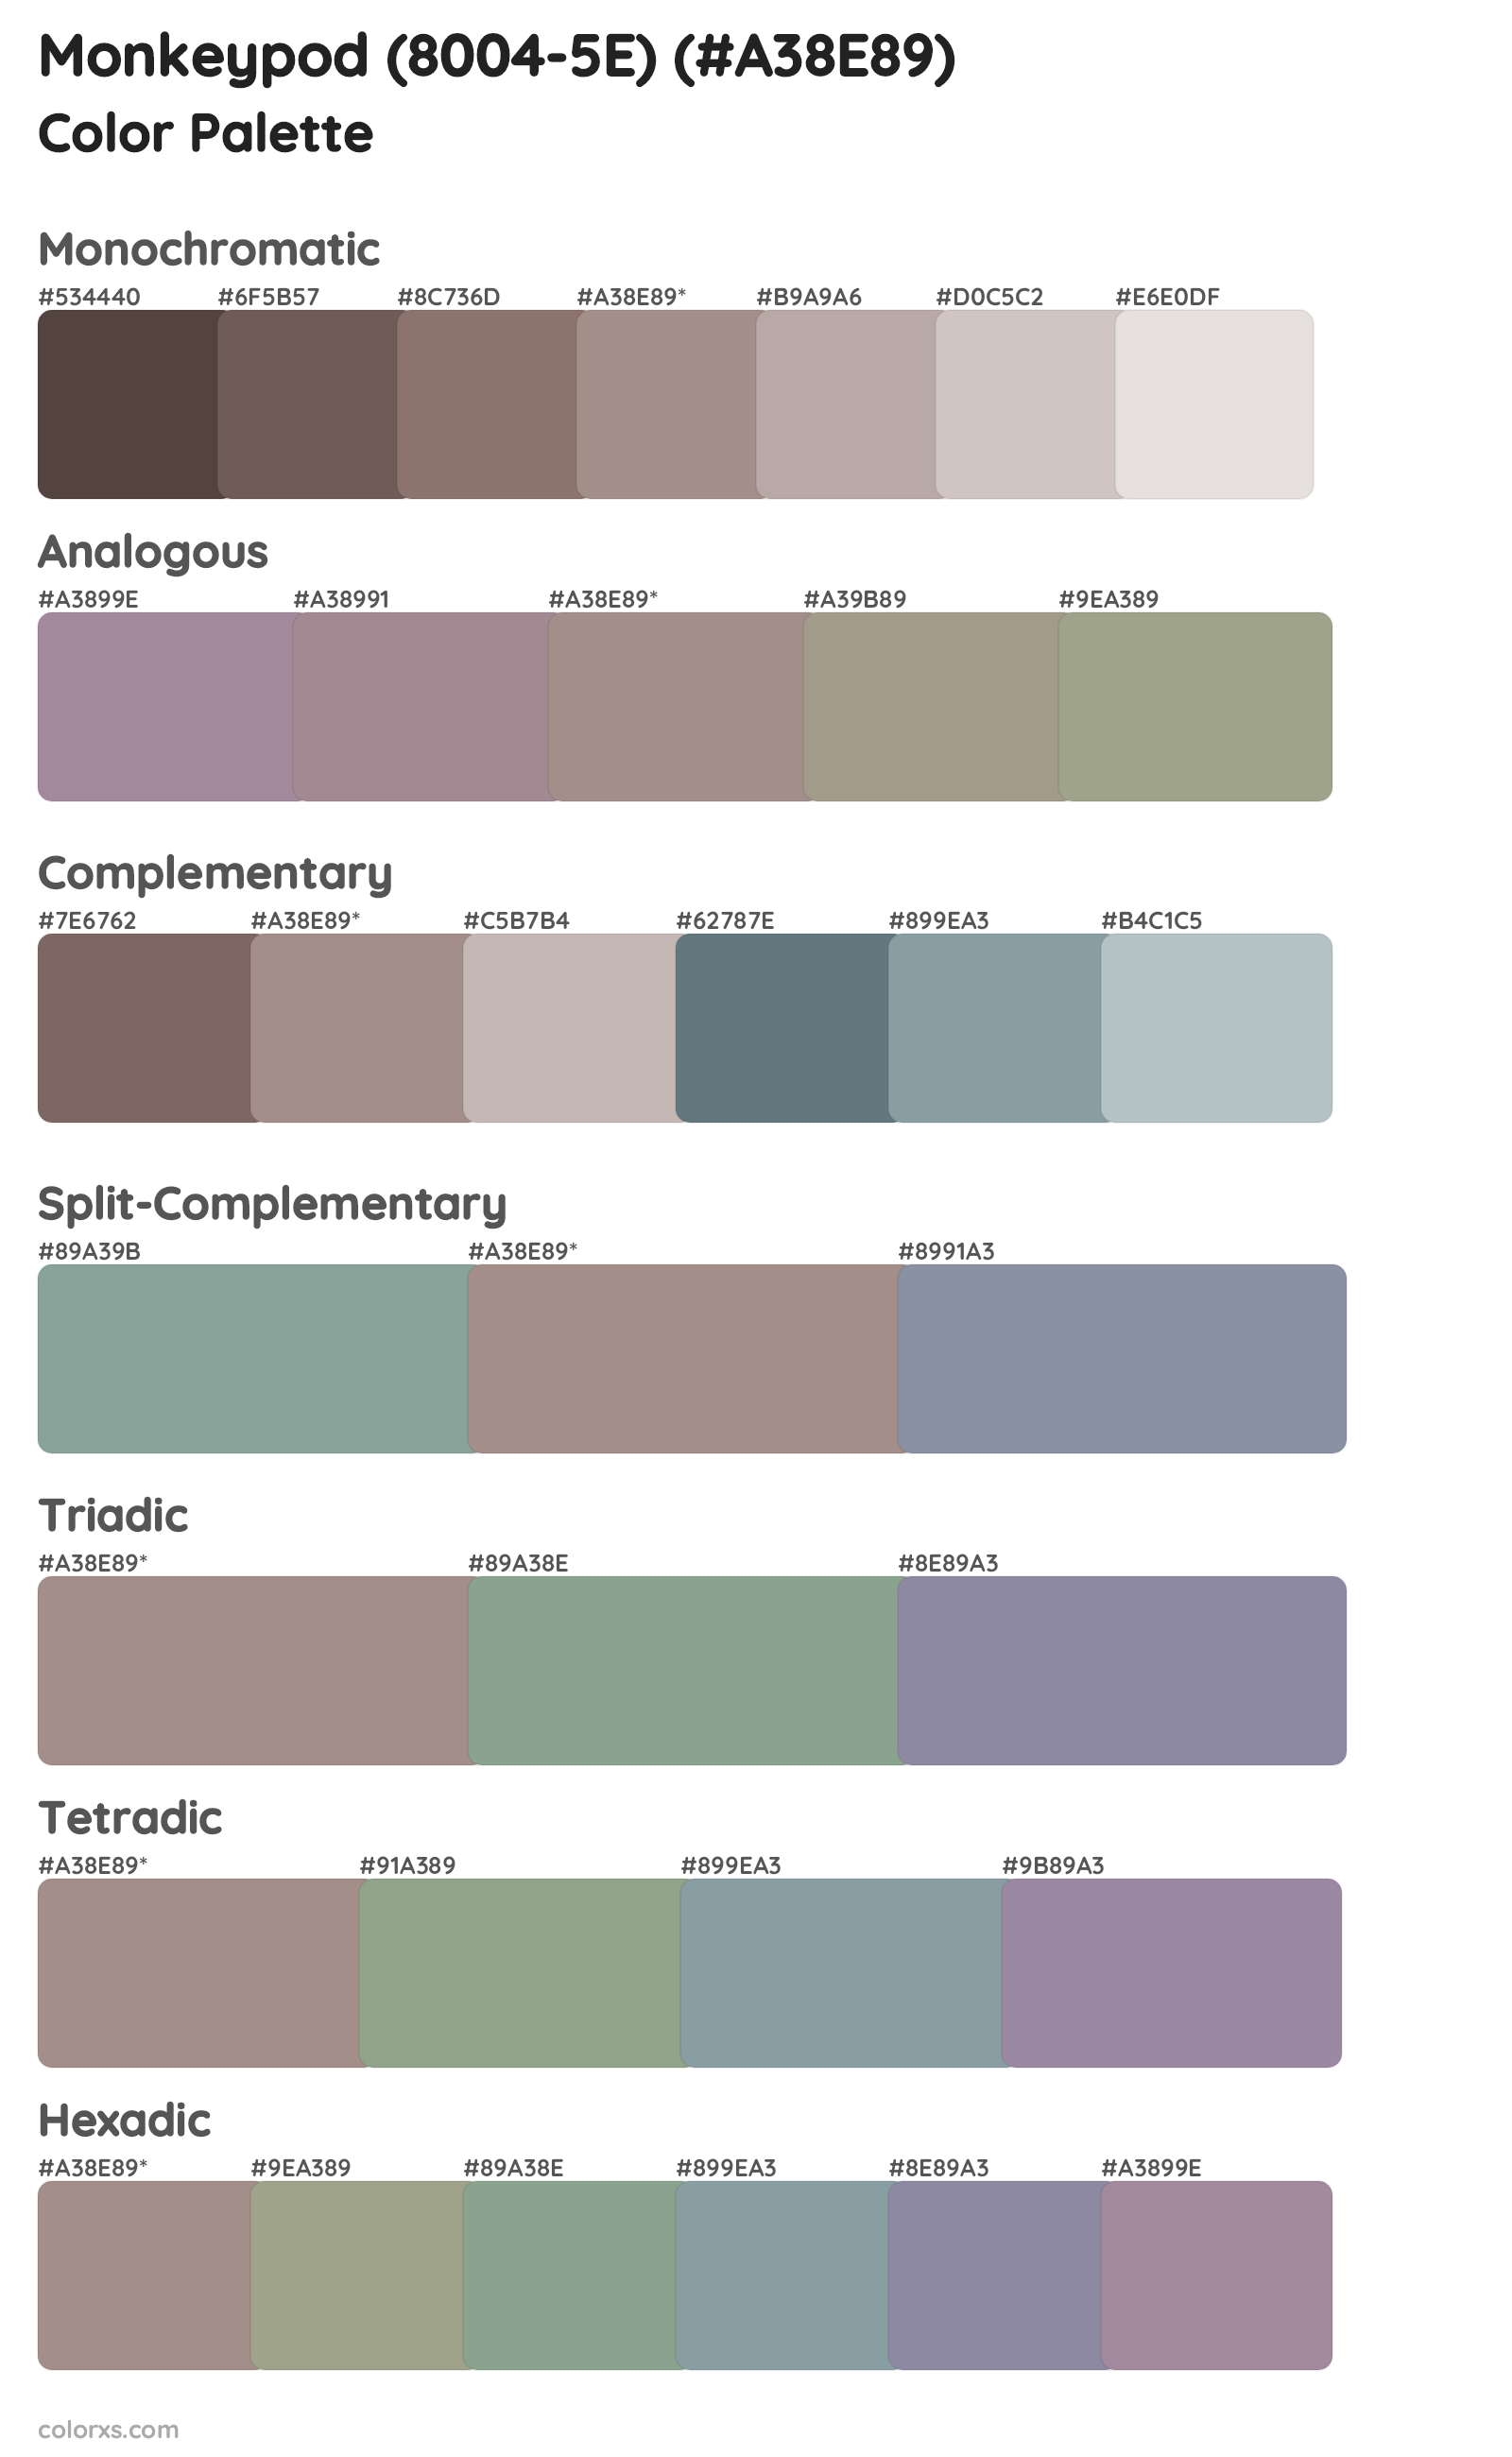 Monkeypod (8004-5E) Color Scheme Palettes